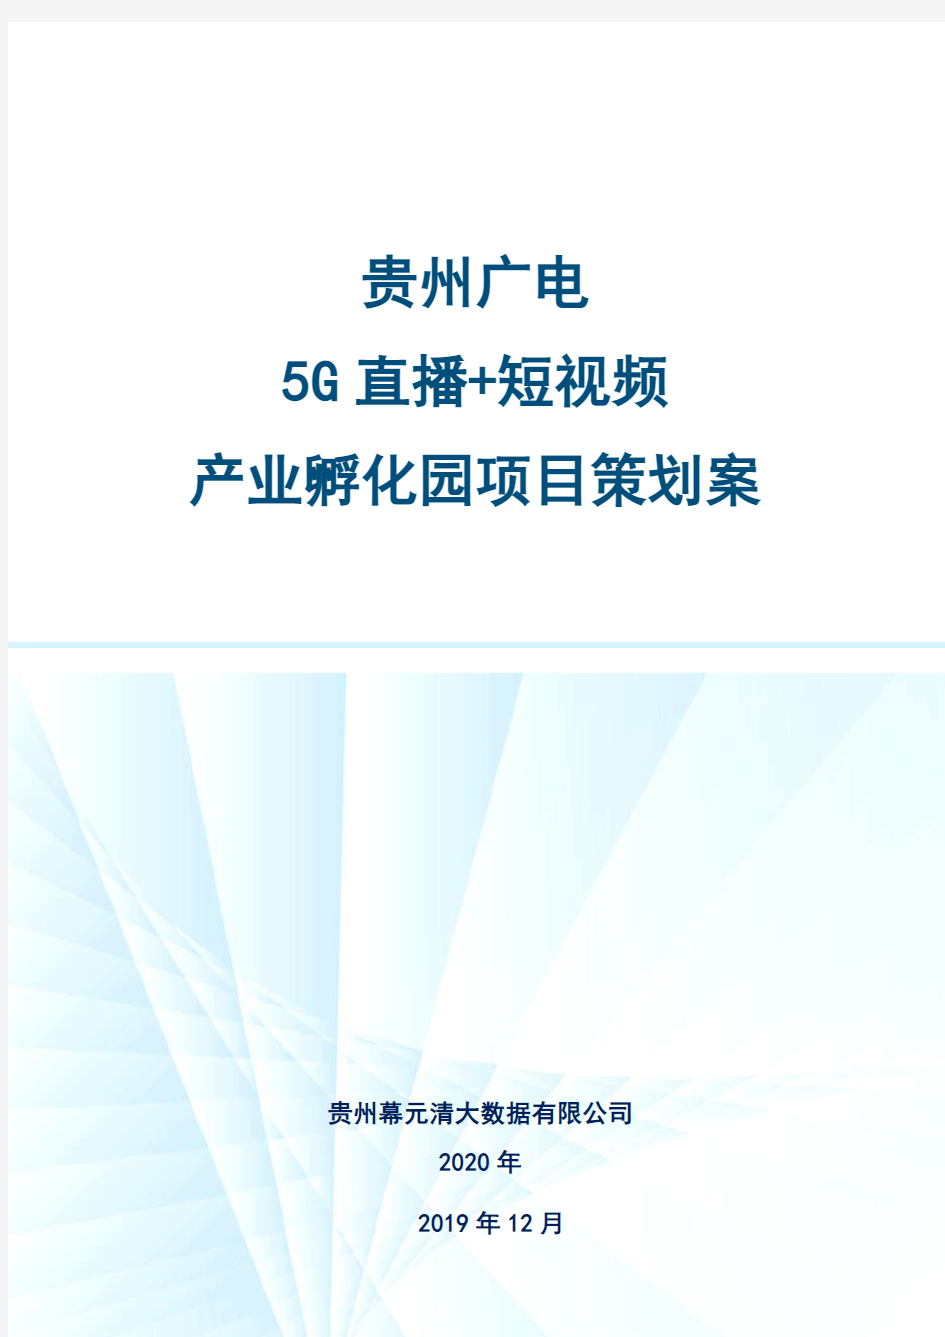 贵州广电5G直播+短视频产业孵化园策划方案v3